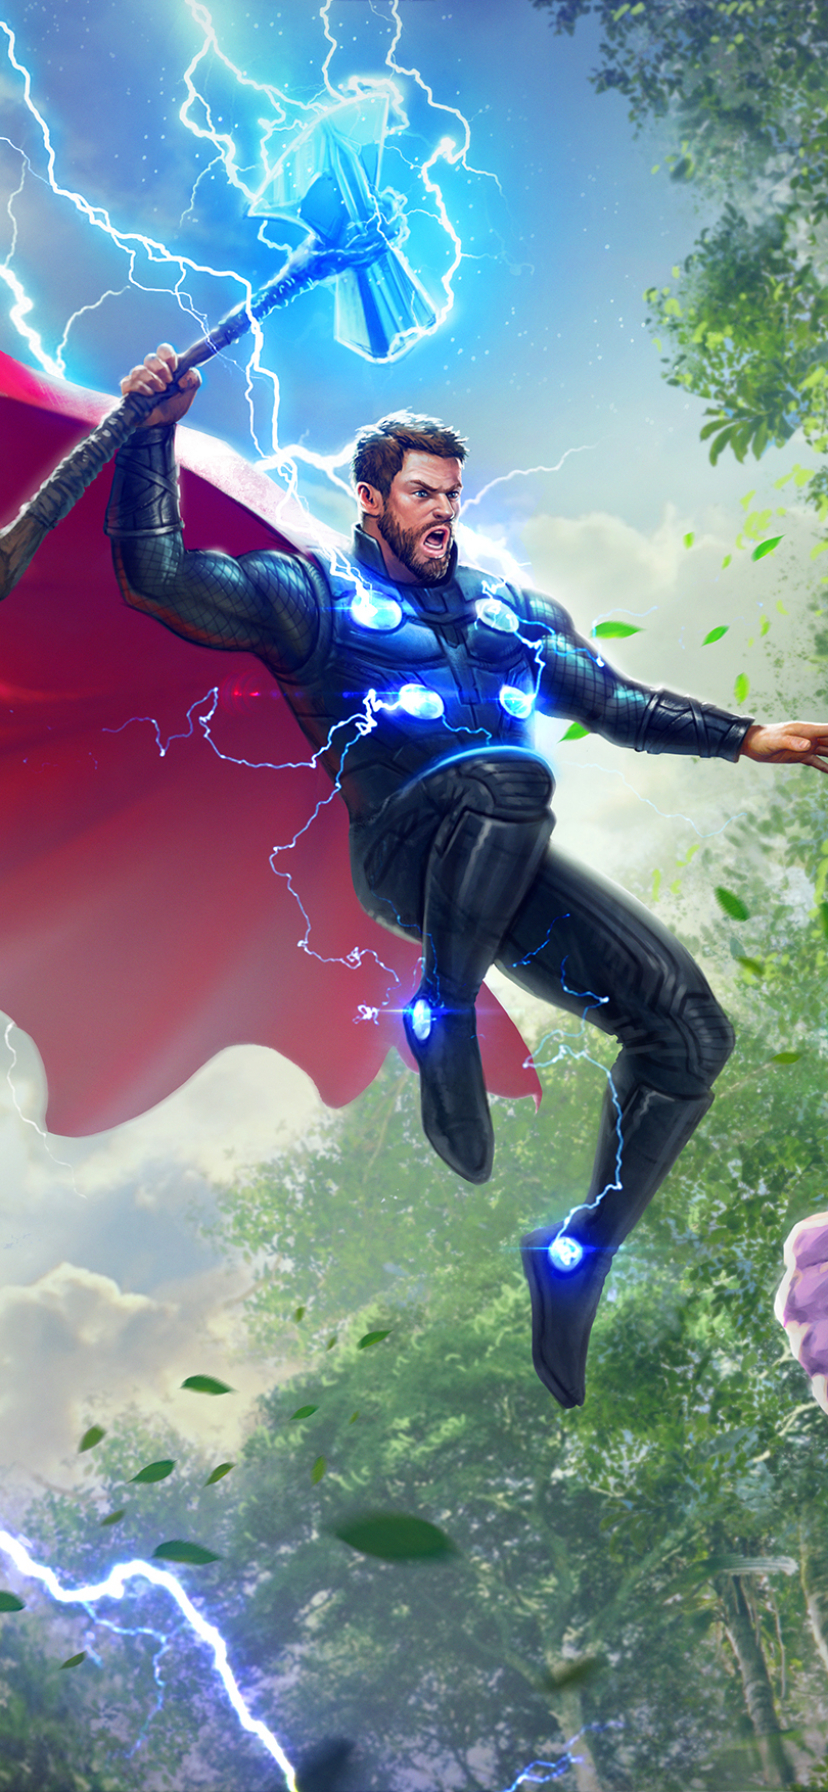 Descarga gratuita de fondo de pantalla para móvil de Los Vengadores, Películas, Thor, Vengadores: Guerra Infinita, Vengadores.